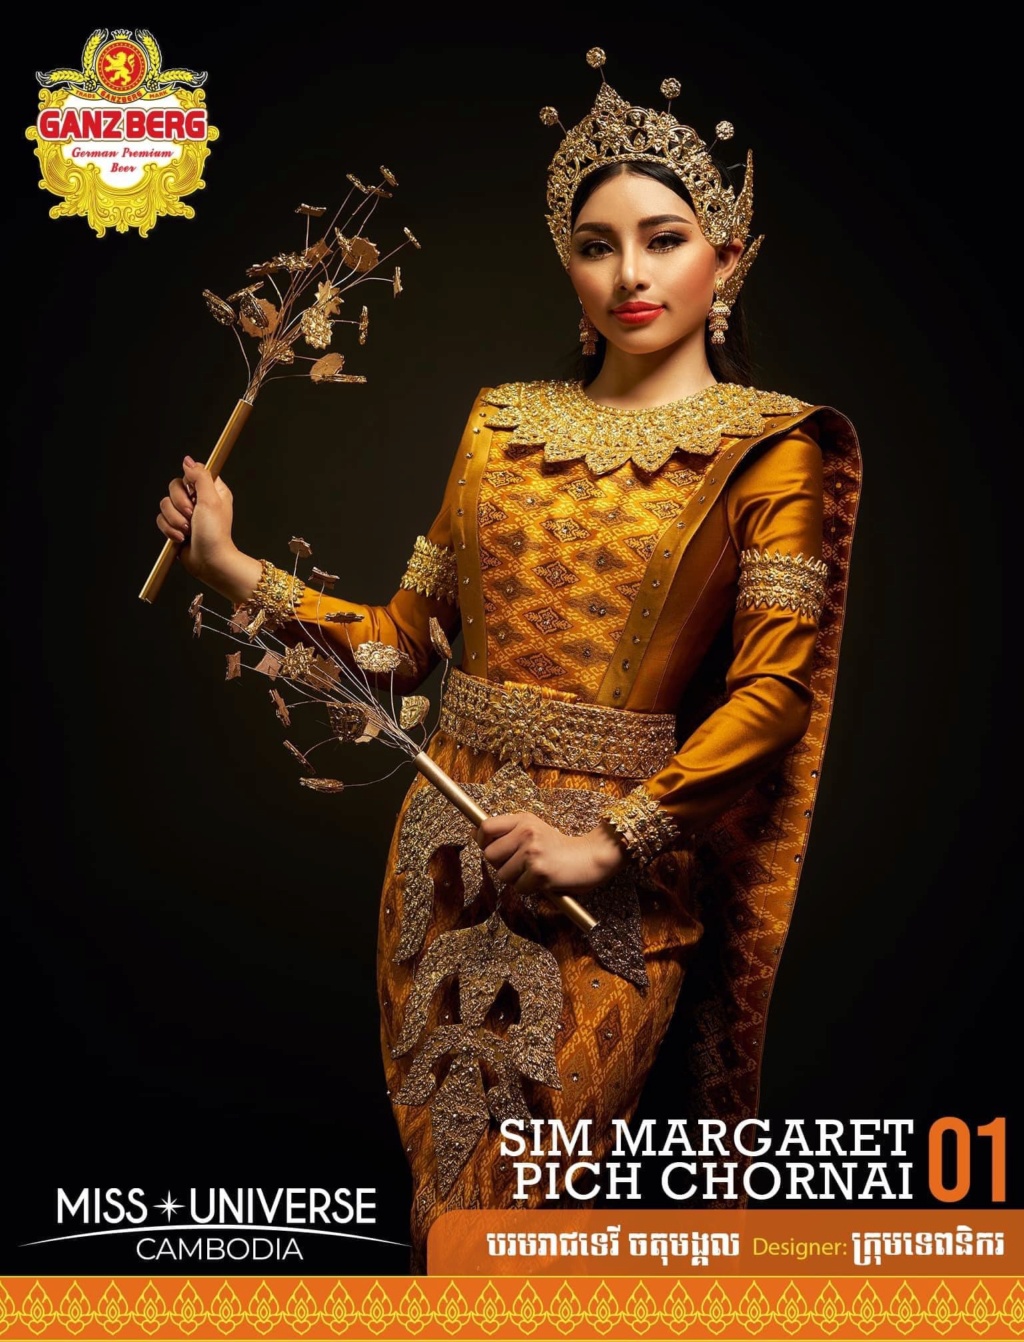 Miss Universe Cambodia 2021 is Ngin Marady 1651